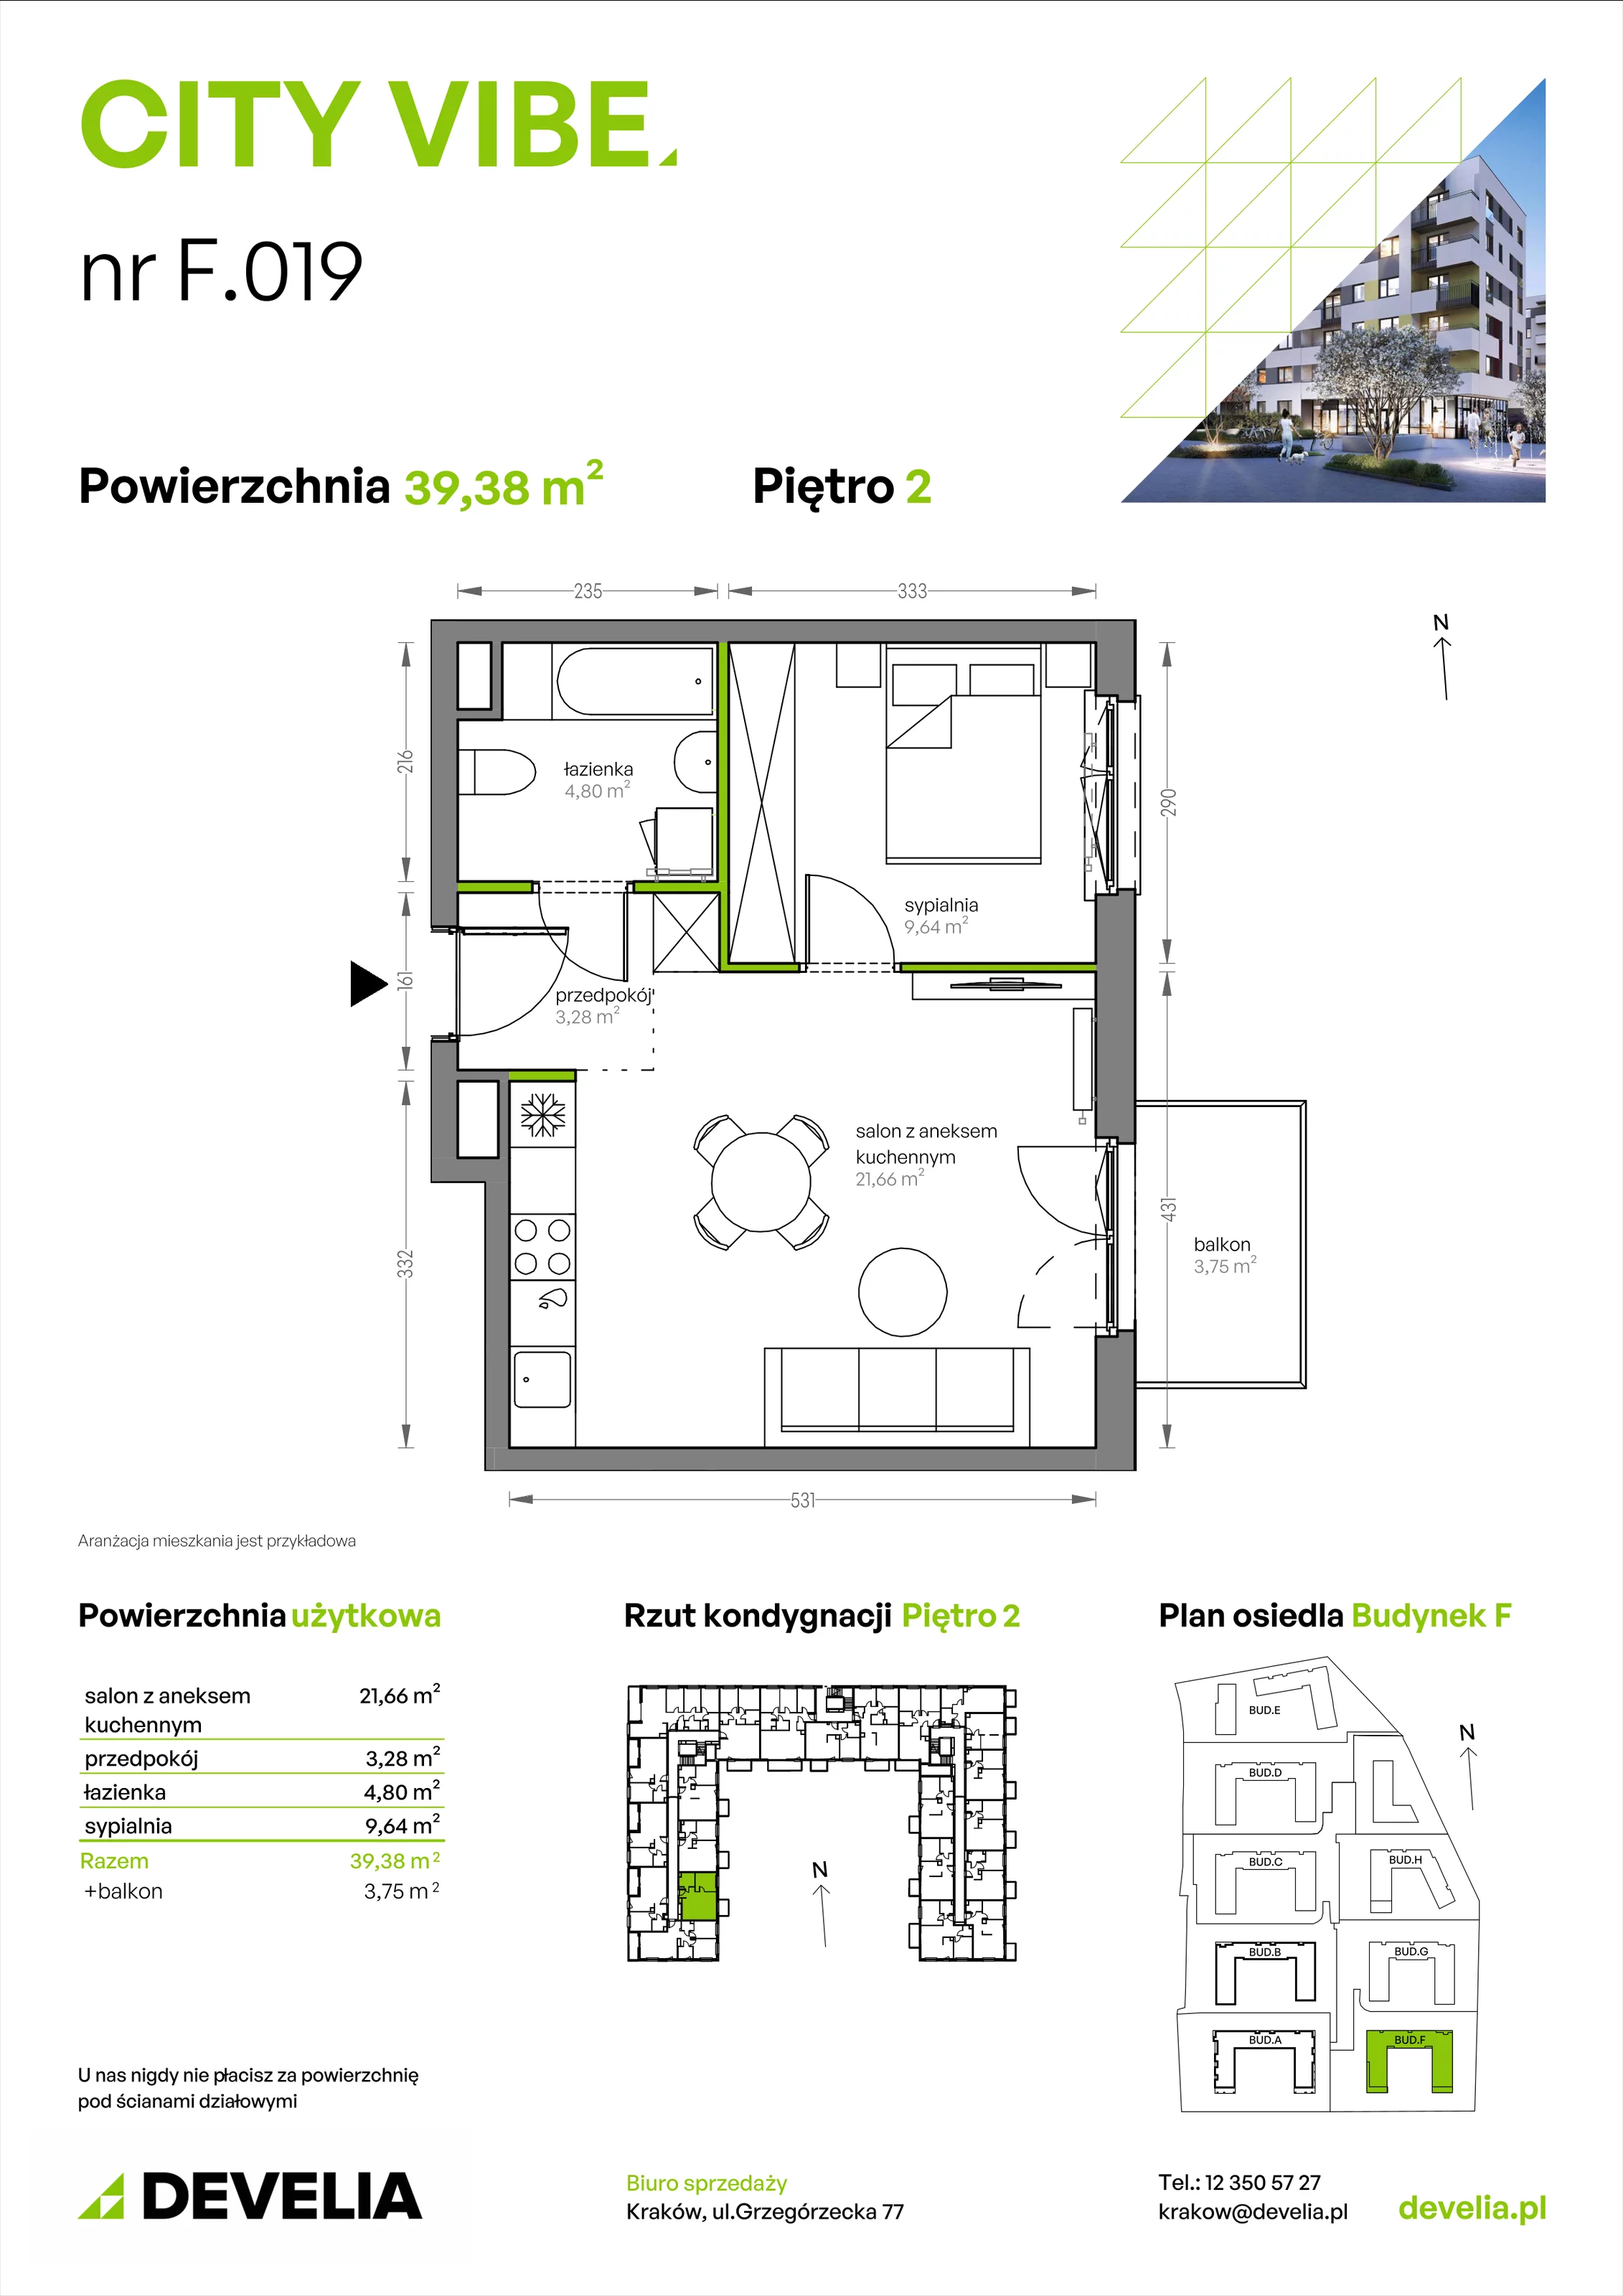 Mieszkanie 39,38 m², piętro 2, oferta nr F/019, City Vibe etap V, Kraków, Podgórze, Płaszów, ul. Myśliwska 68